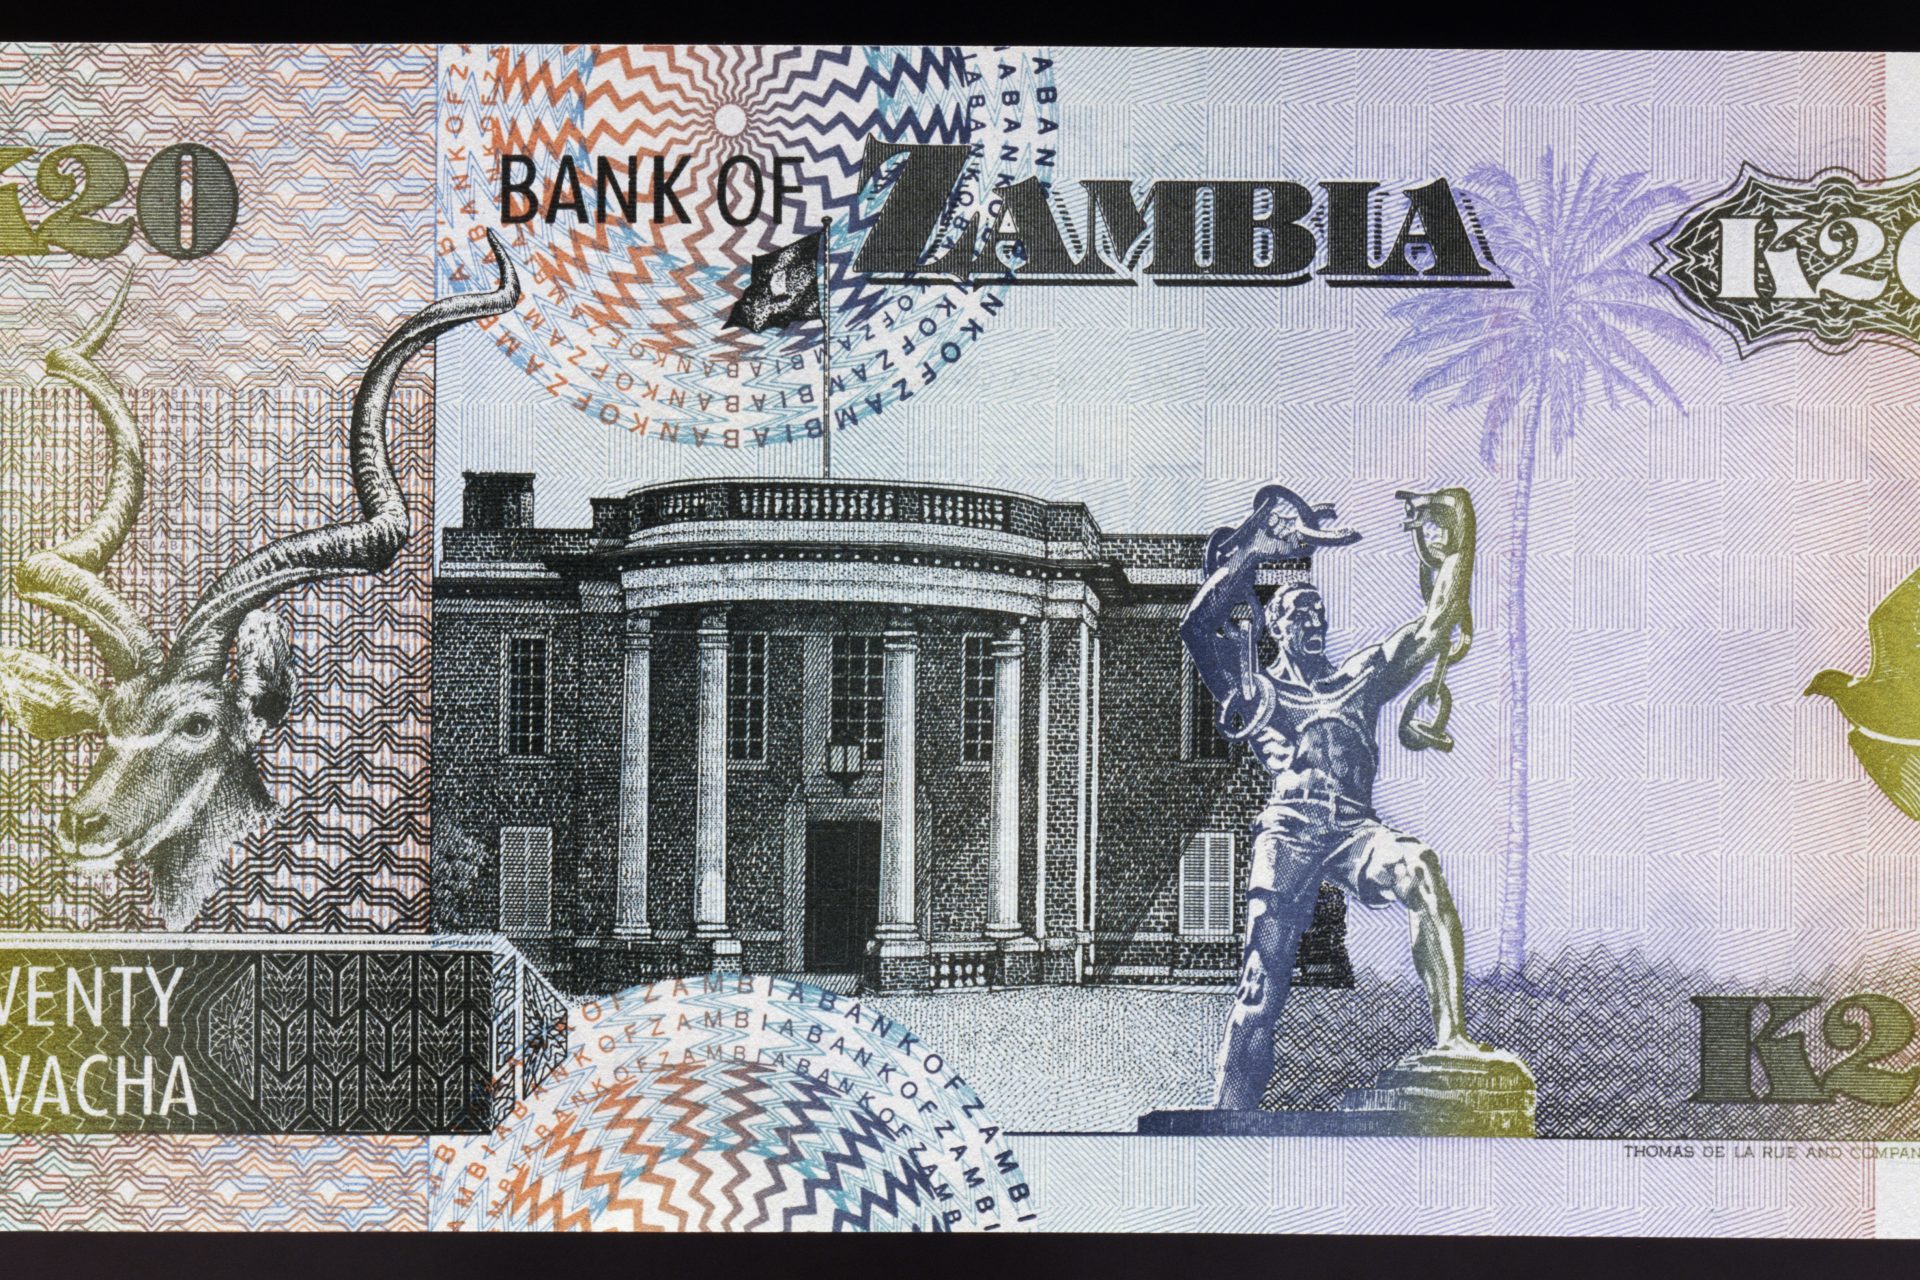 Aumento el lavado de dinero desde Zambia hacia el extranjero